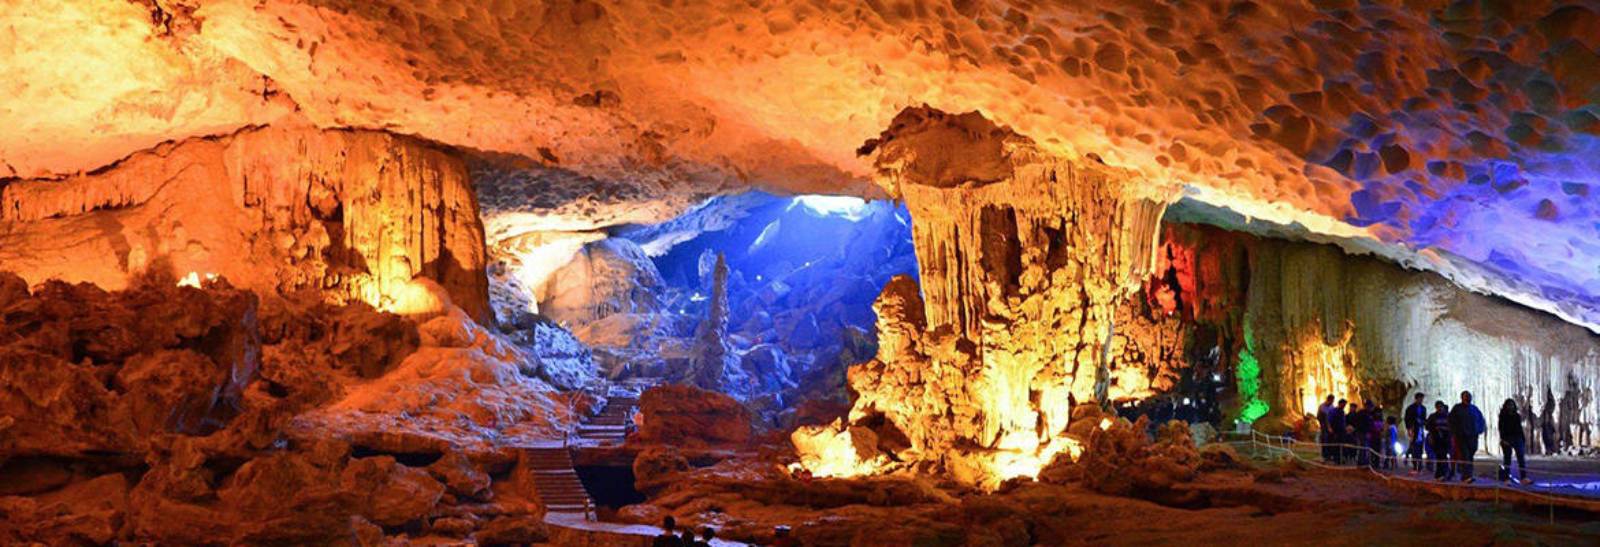 Dau Go Cave, Ha Long Bay, Quang Ninh Province